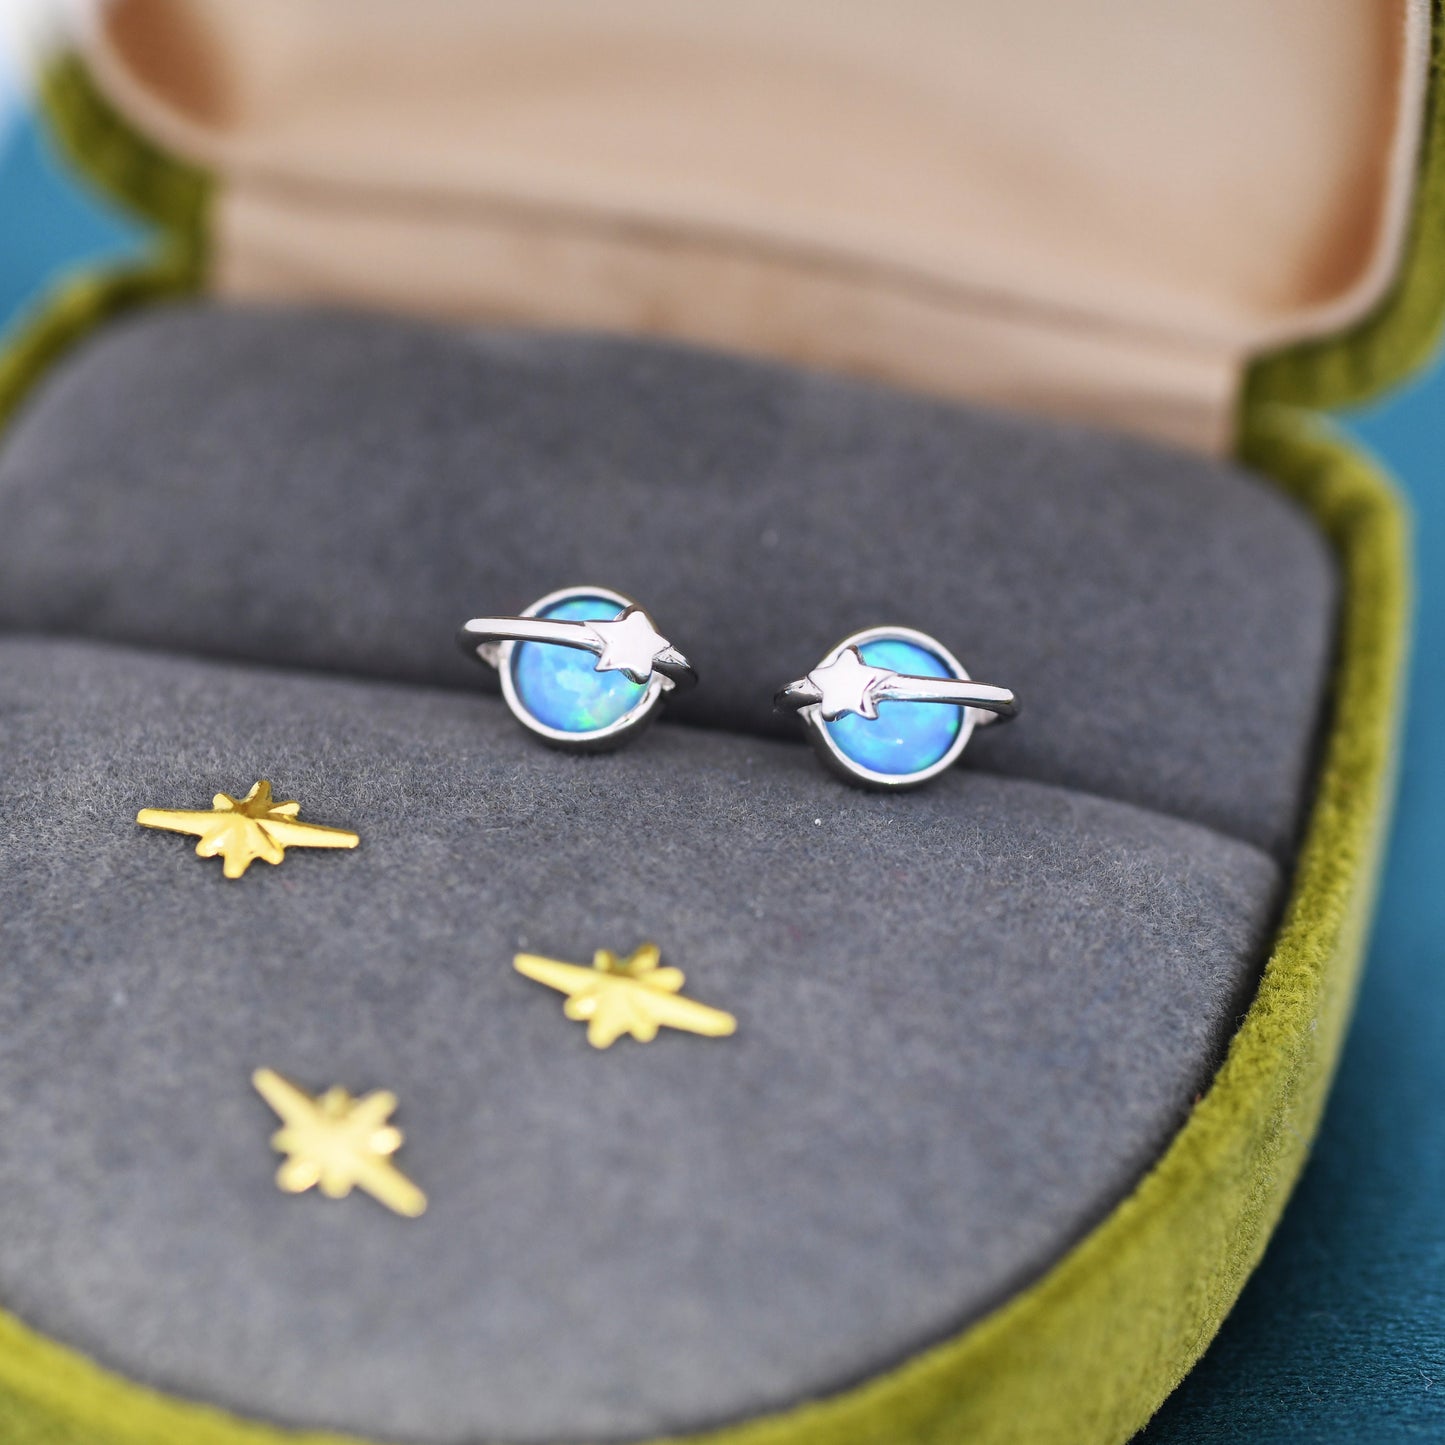 Blue Opal Planet Stud Earrings in Sterling Silver, Lab Opal Planet Earrings, Fire Opal Saturn Earrings